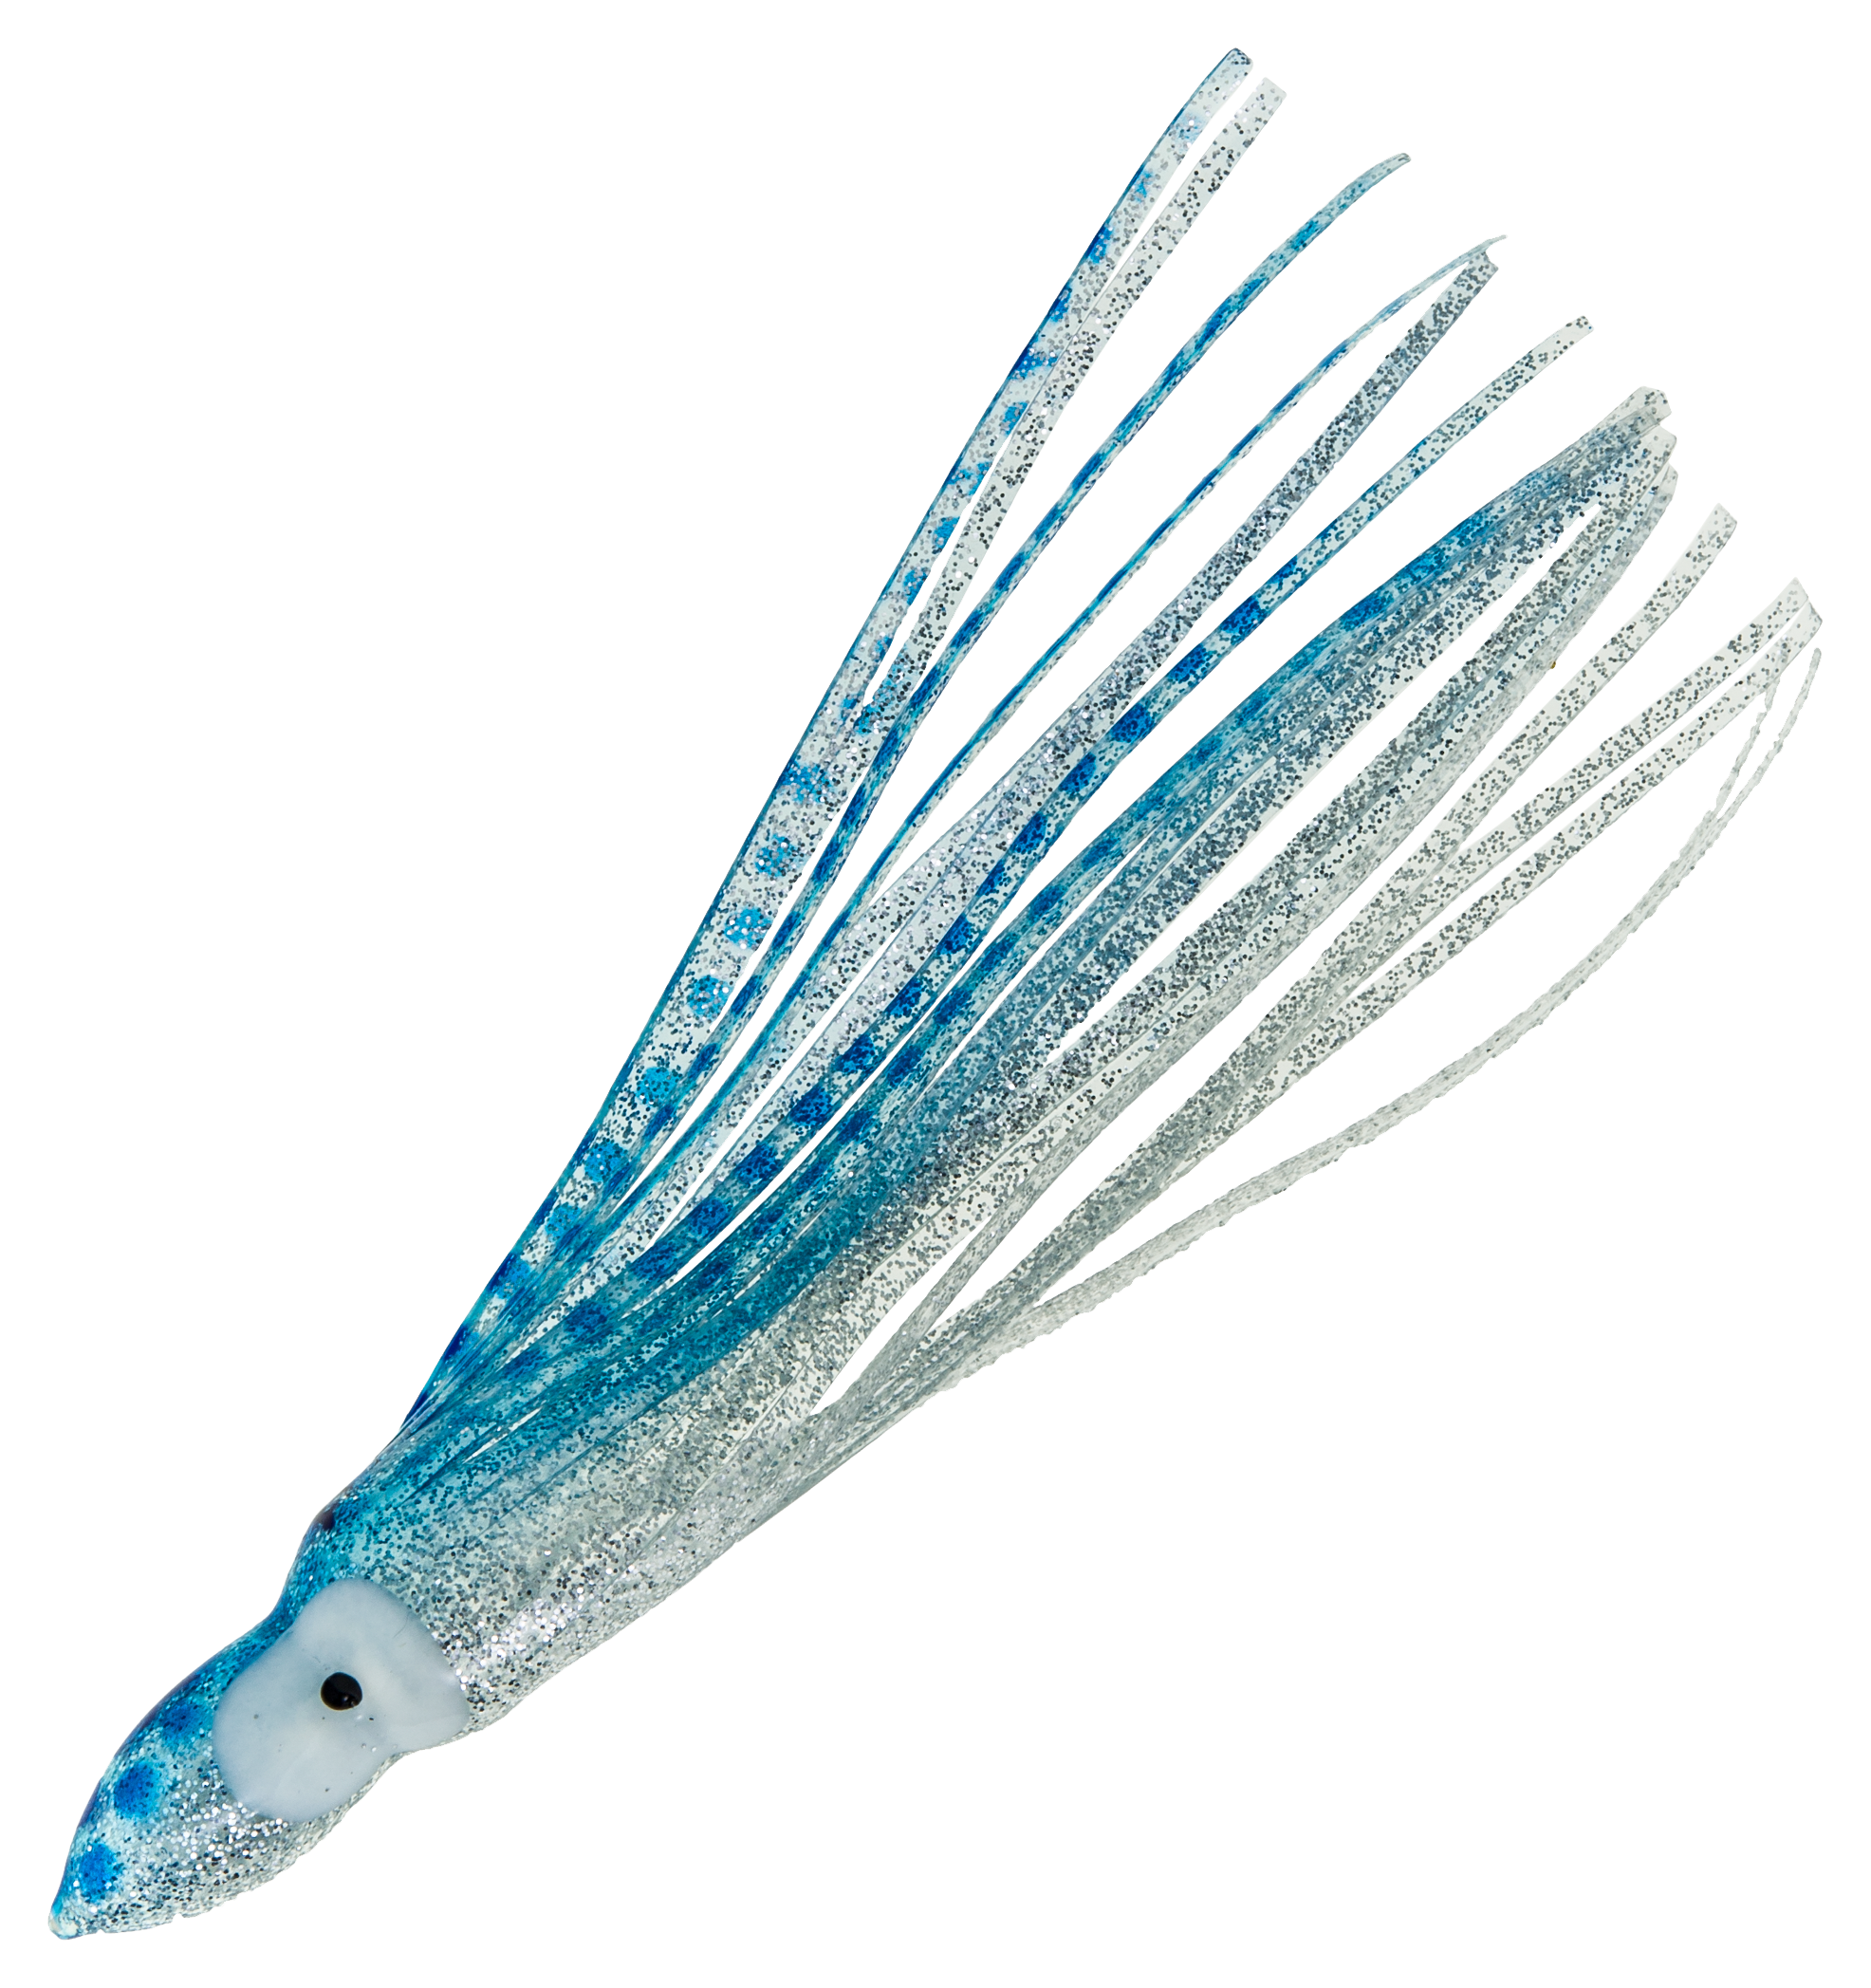 Offshore Angler Squid Skirts - 7-1/2' - Blue Spot Silver Glitter